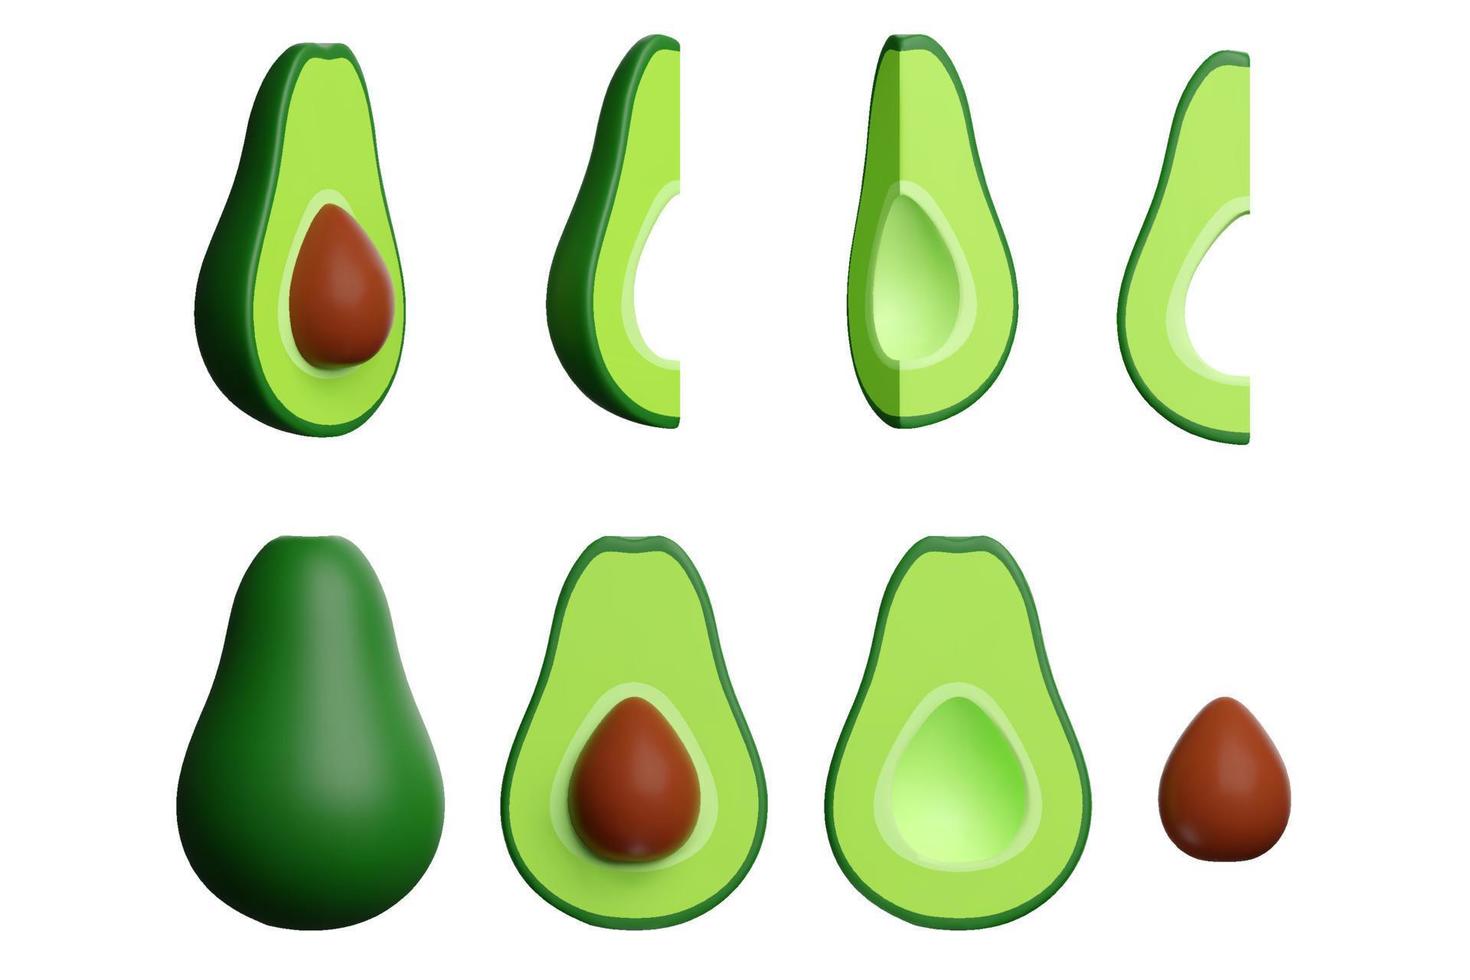 3d groen avocado, reeks van vers geheel, voor de helft, besnoeiing plak, met een groot zaad. groente voedsel, vers biologisch fruit voor gezond levensstijl. vector illustratie realistisch tekenfilm stijl geïsoleerd